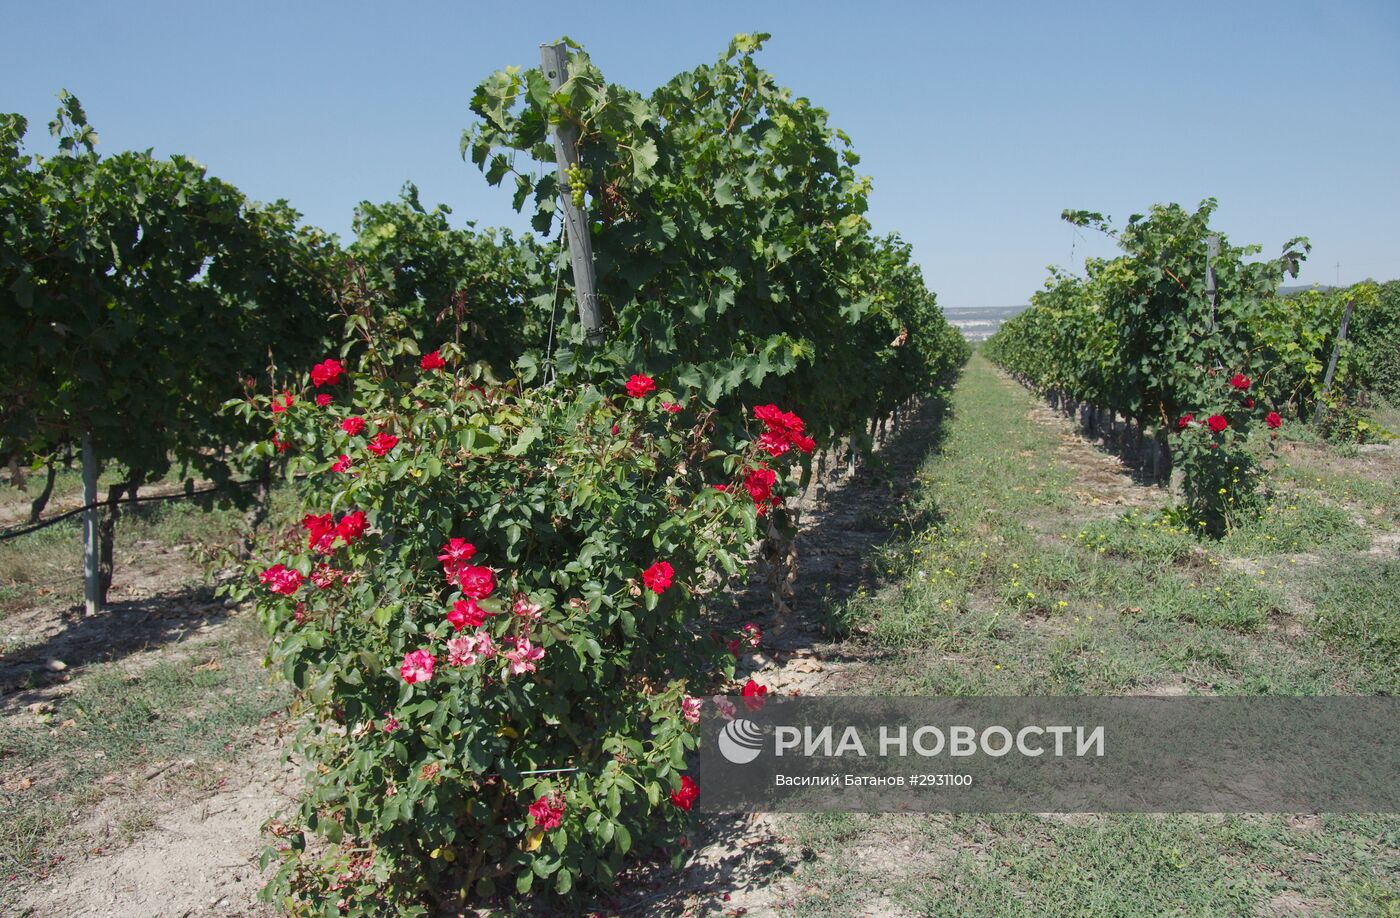 Винодельческое хозяйство "Шато Люсьен" в Крыму